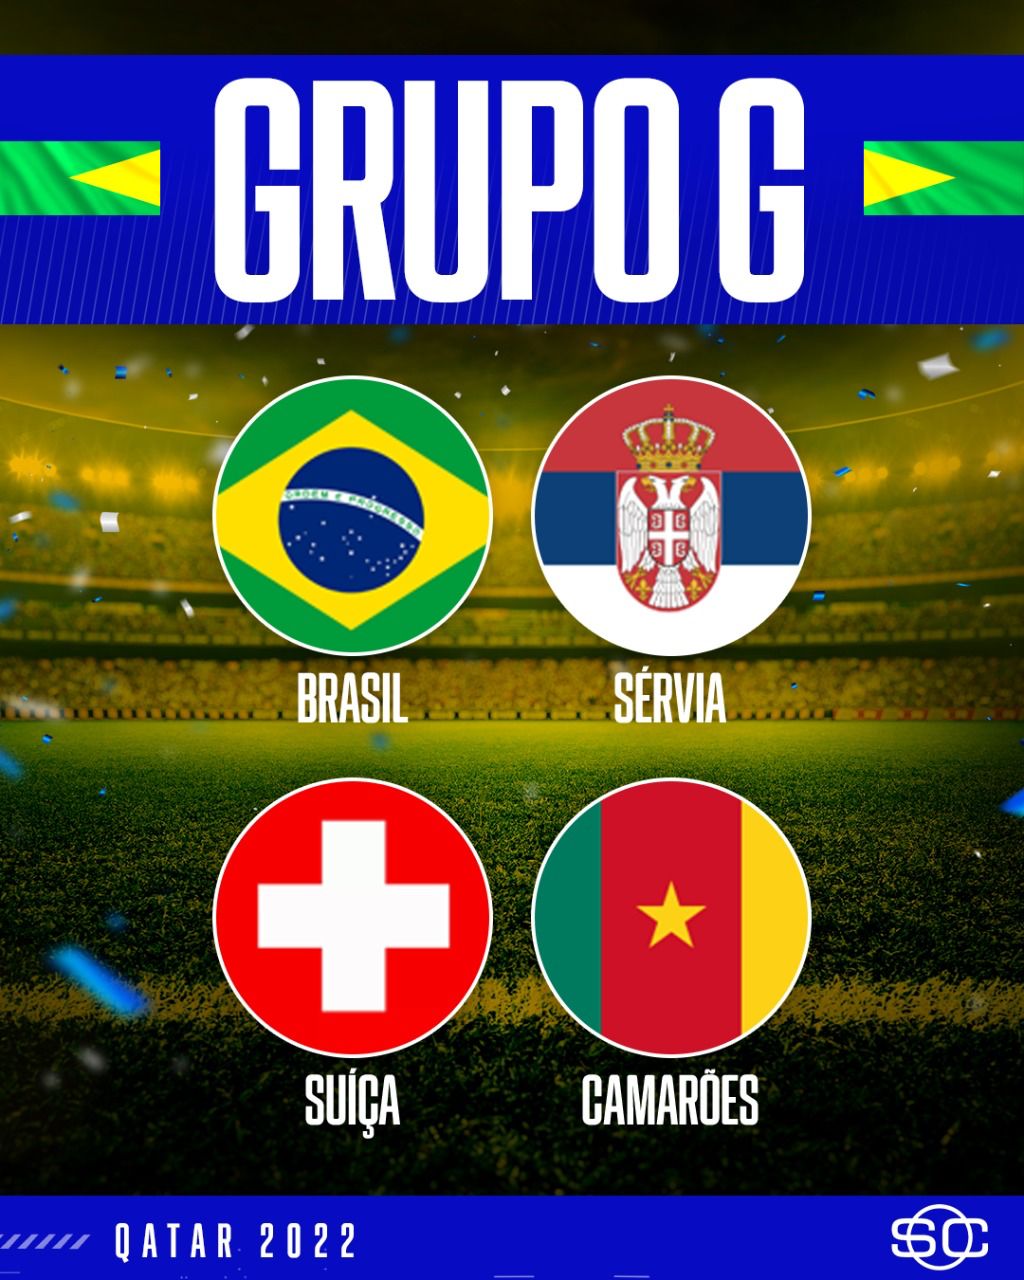 Veja como ficaram os grupos da Copa do Mundo 2022 após sorteio da Fifa -  Tribuna de Ituverava